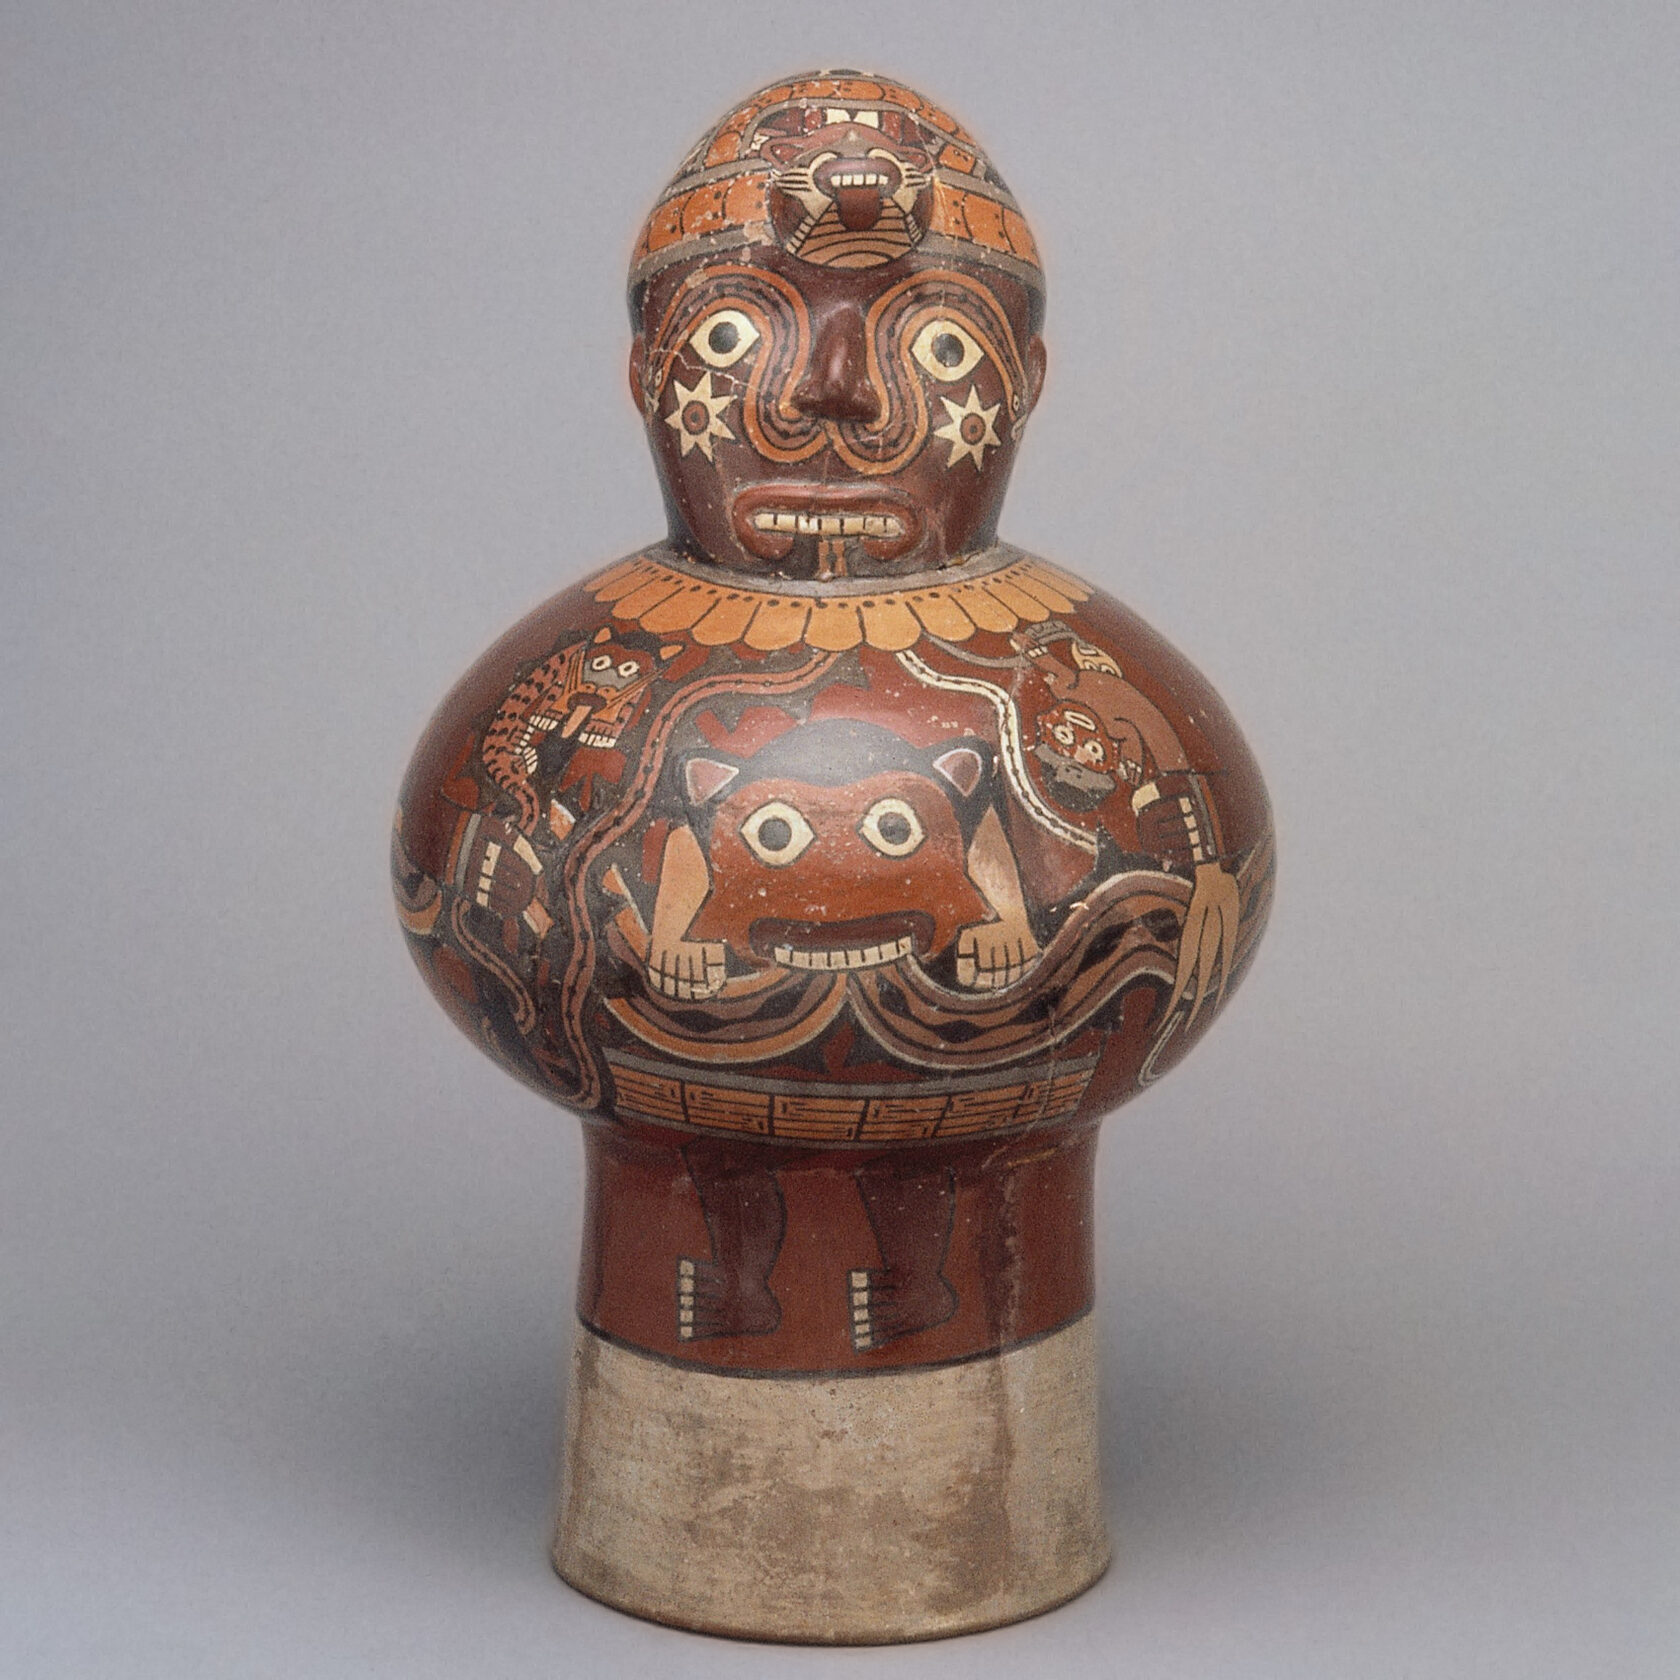 Керамический барабан. Культура Наска, Перу, 1-800 гг. н.э. Коллекция Museo Larco, Lima.